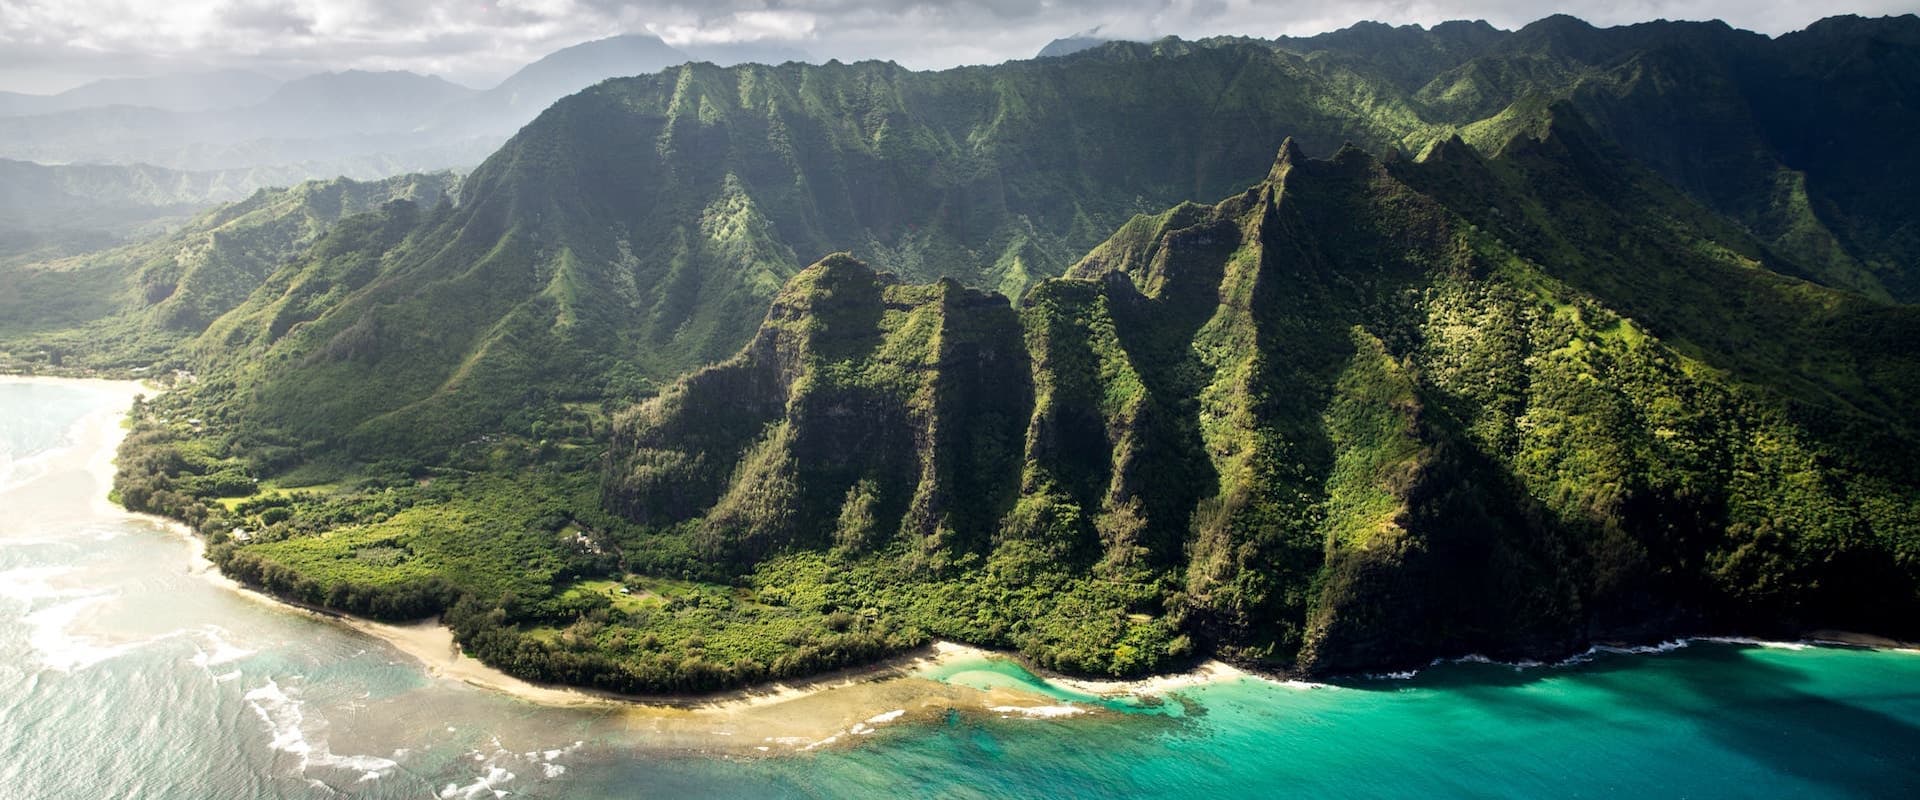 Duiken in Hawaii